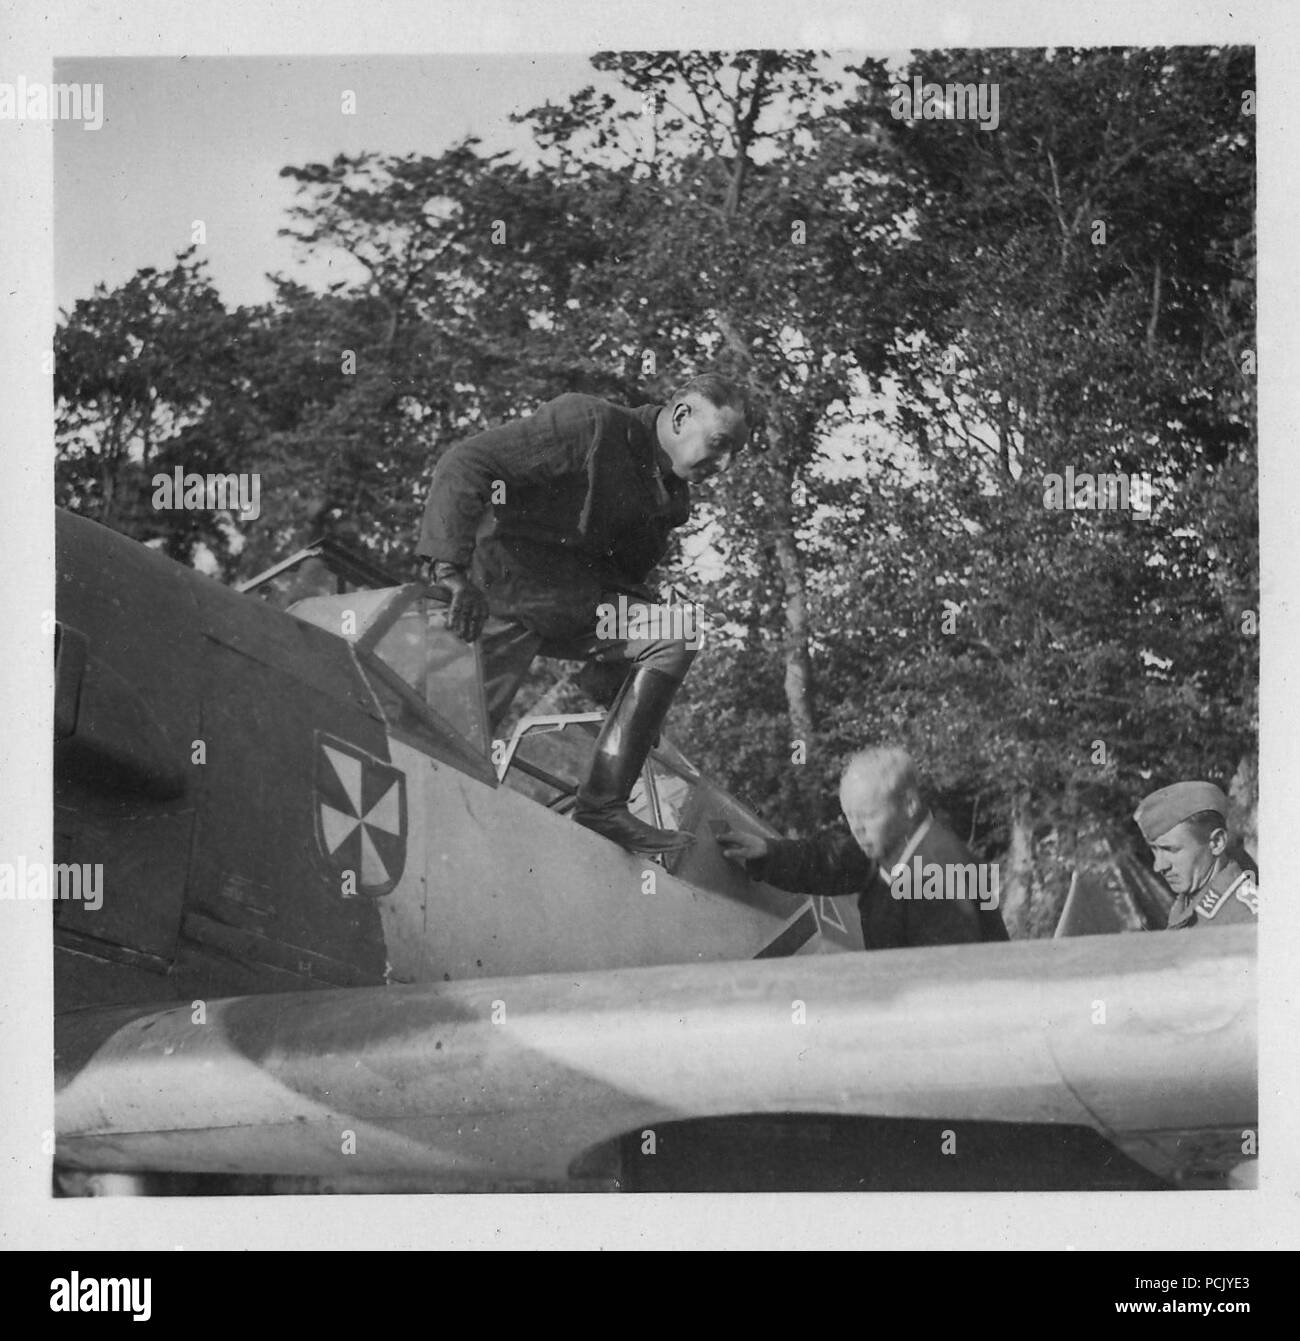 Image à partir d'un album de photos relatives à II. Gruppe, Jagdgeschwader 3 : Hauptmann Erich Woitke, Staffelkapitän du 6./JG3 et agissant de Gruppenkommandeur II./JG3 à partir du 1er octobre 1940 jusqu'au 23 novembre 1940, descend de son Messerschmitt Bf 109E à Wierre au bois à l'été 1940. Banque D'Images